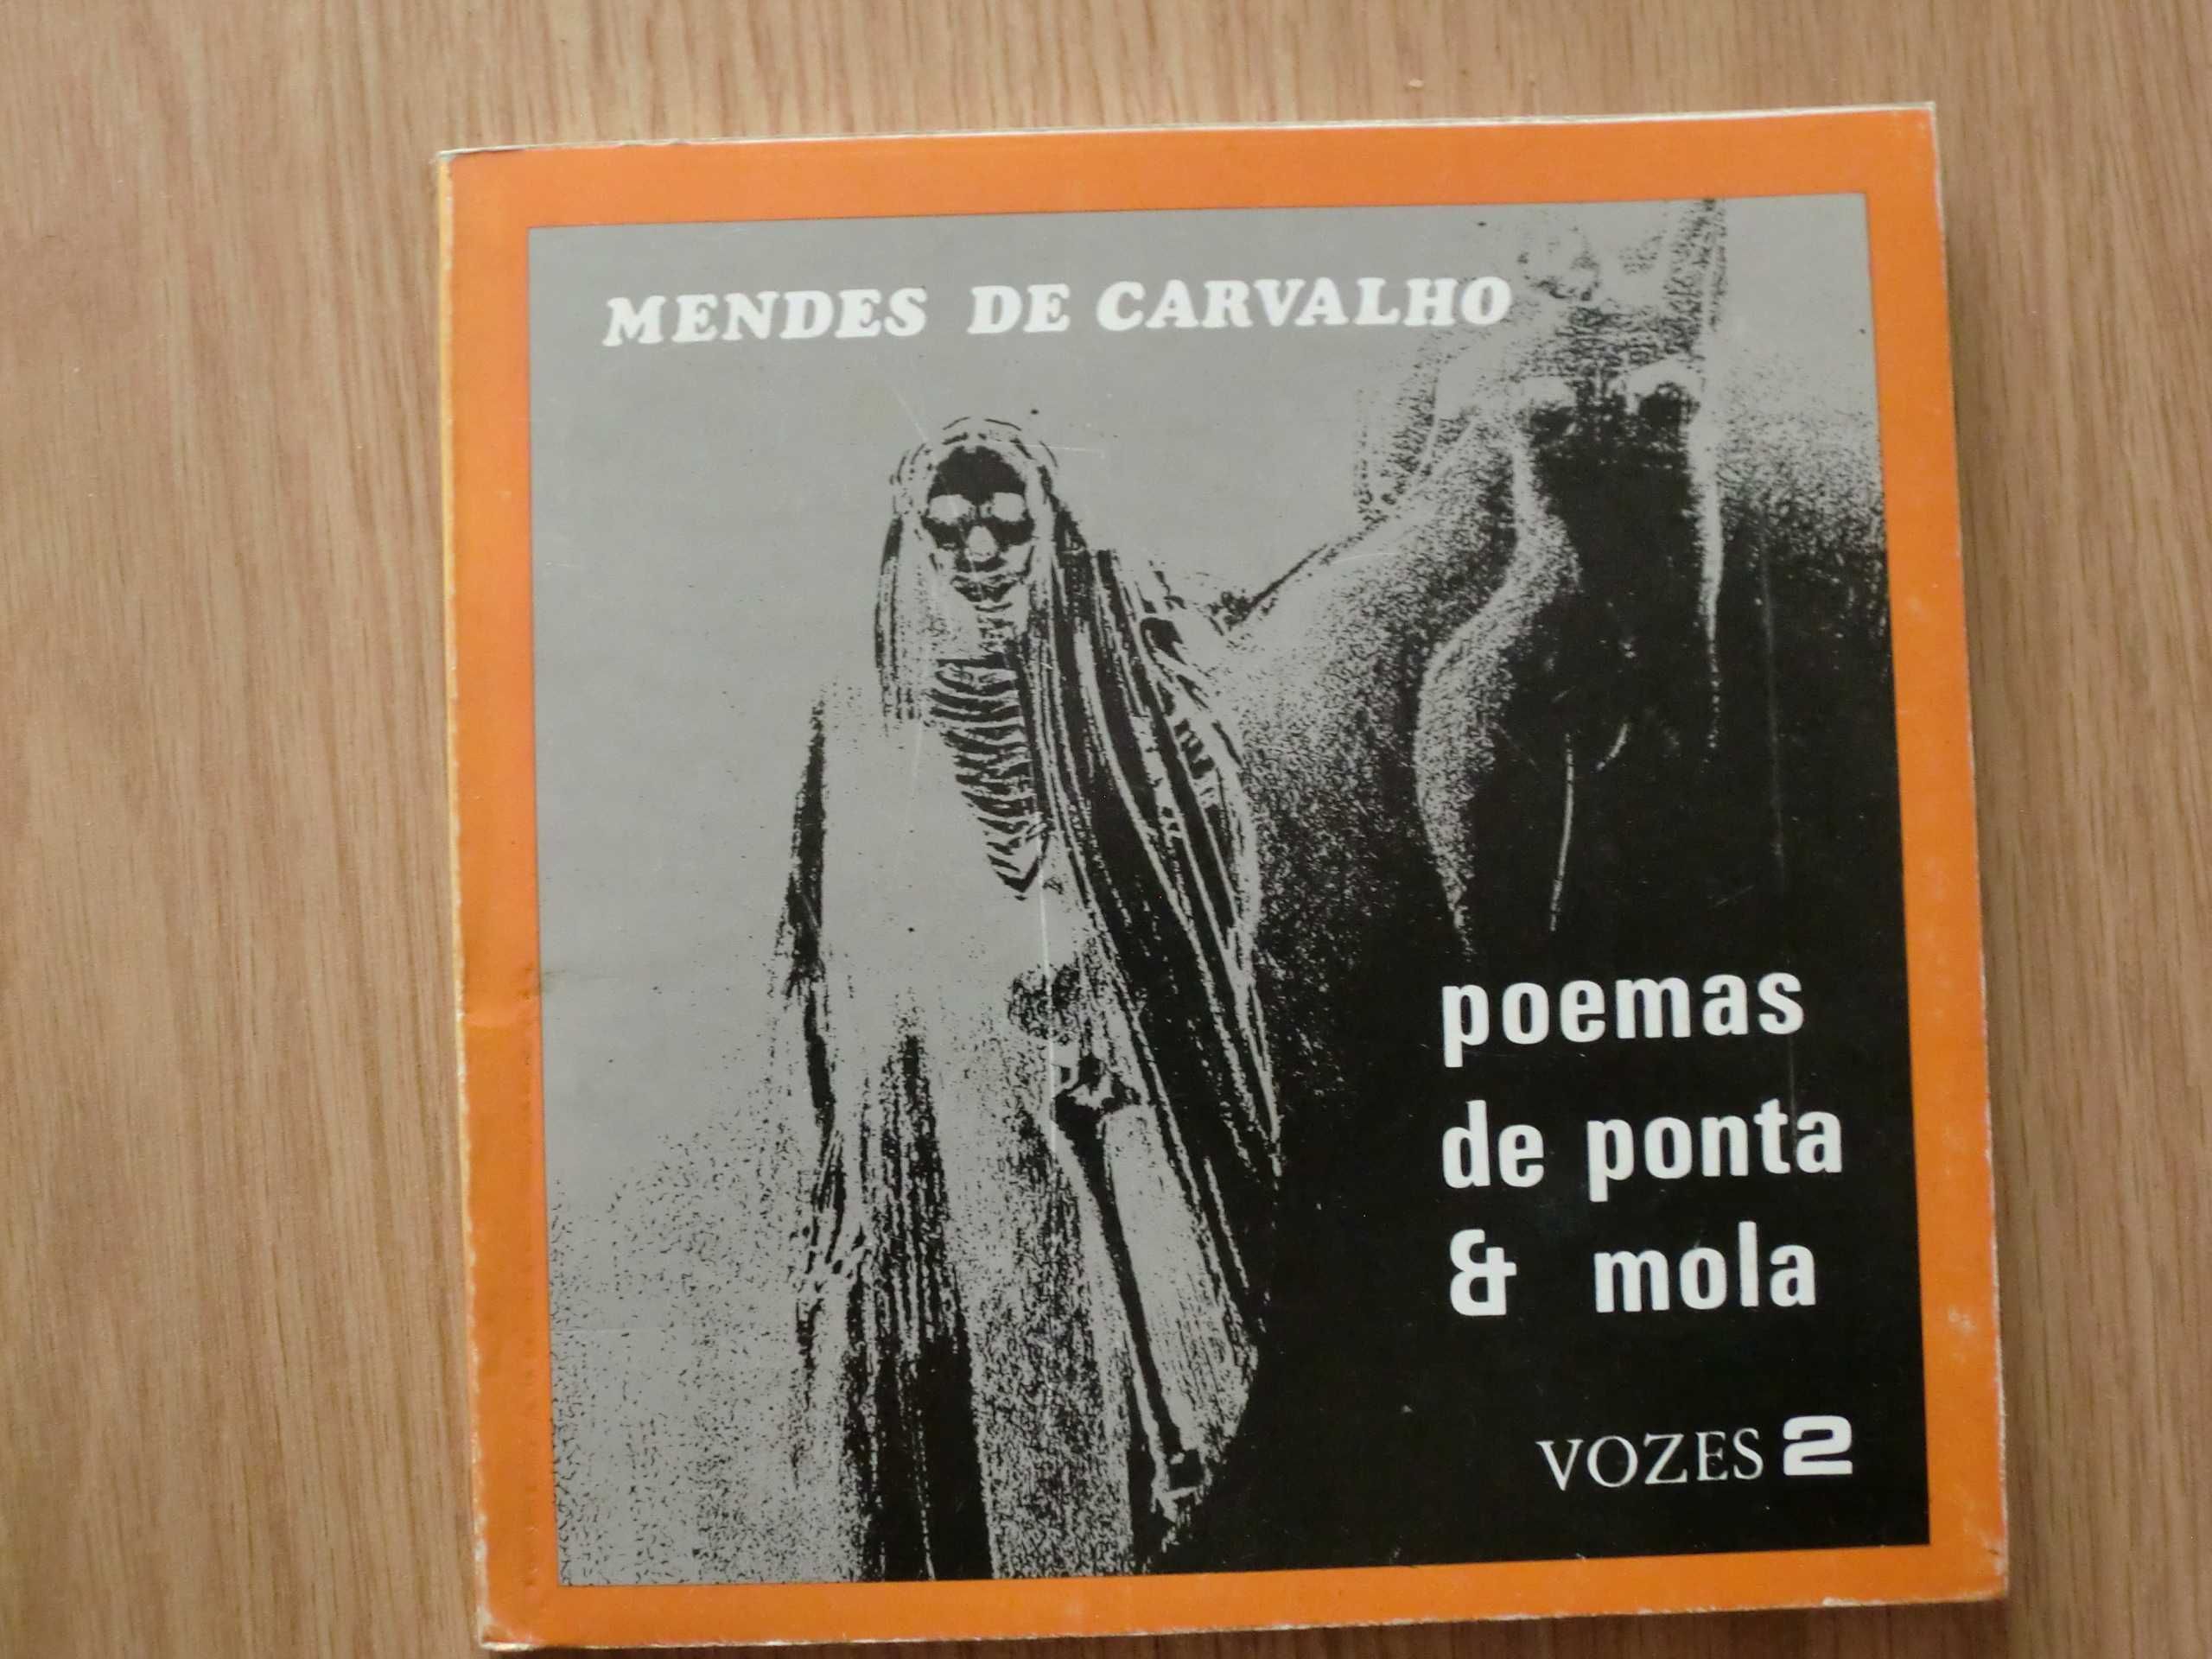 Poemas de ponta & mola de Mendes de Carvalho